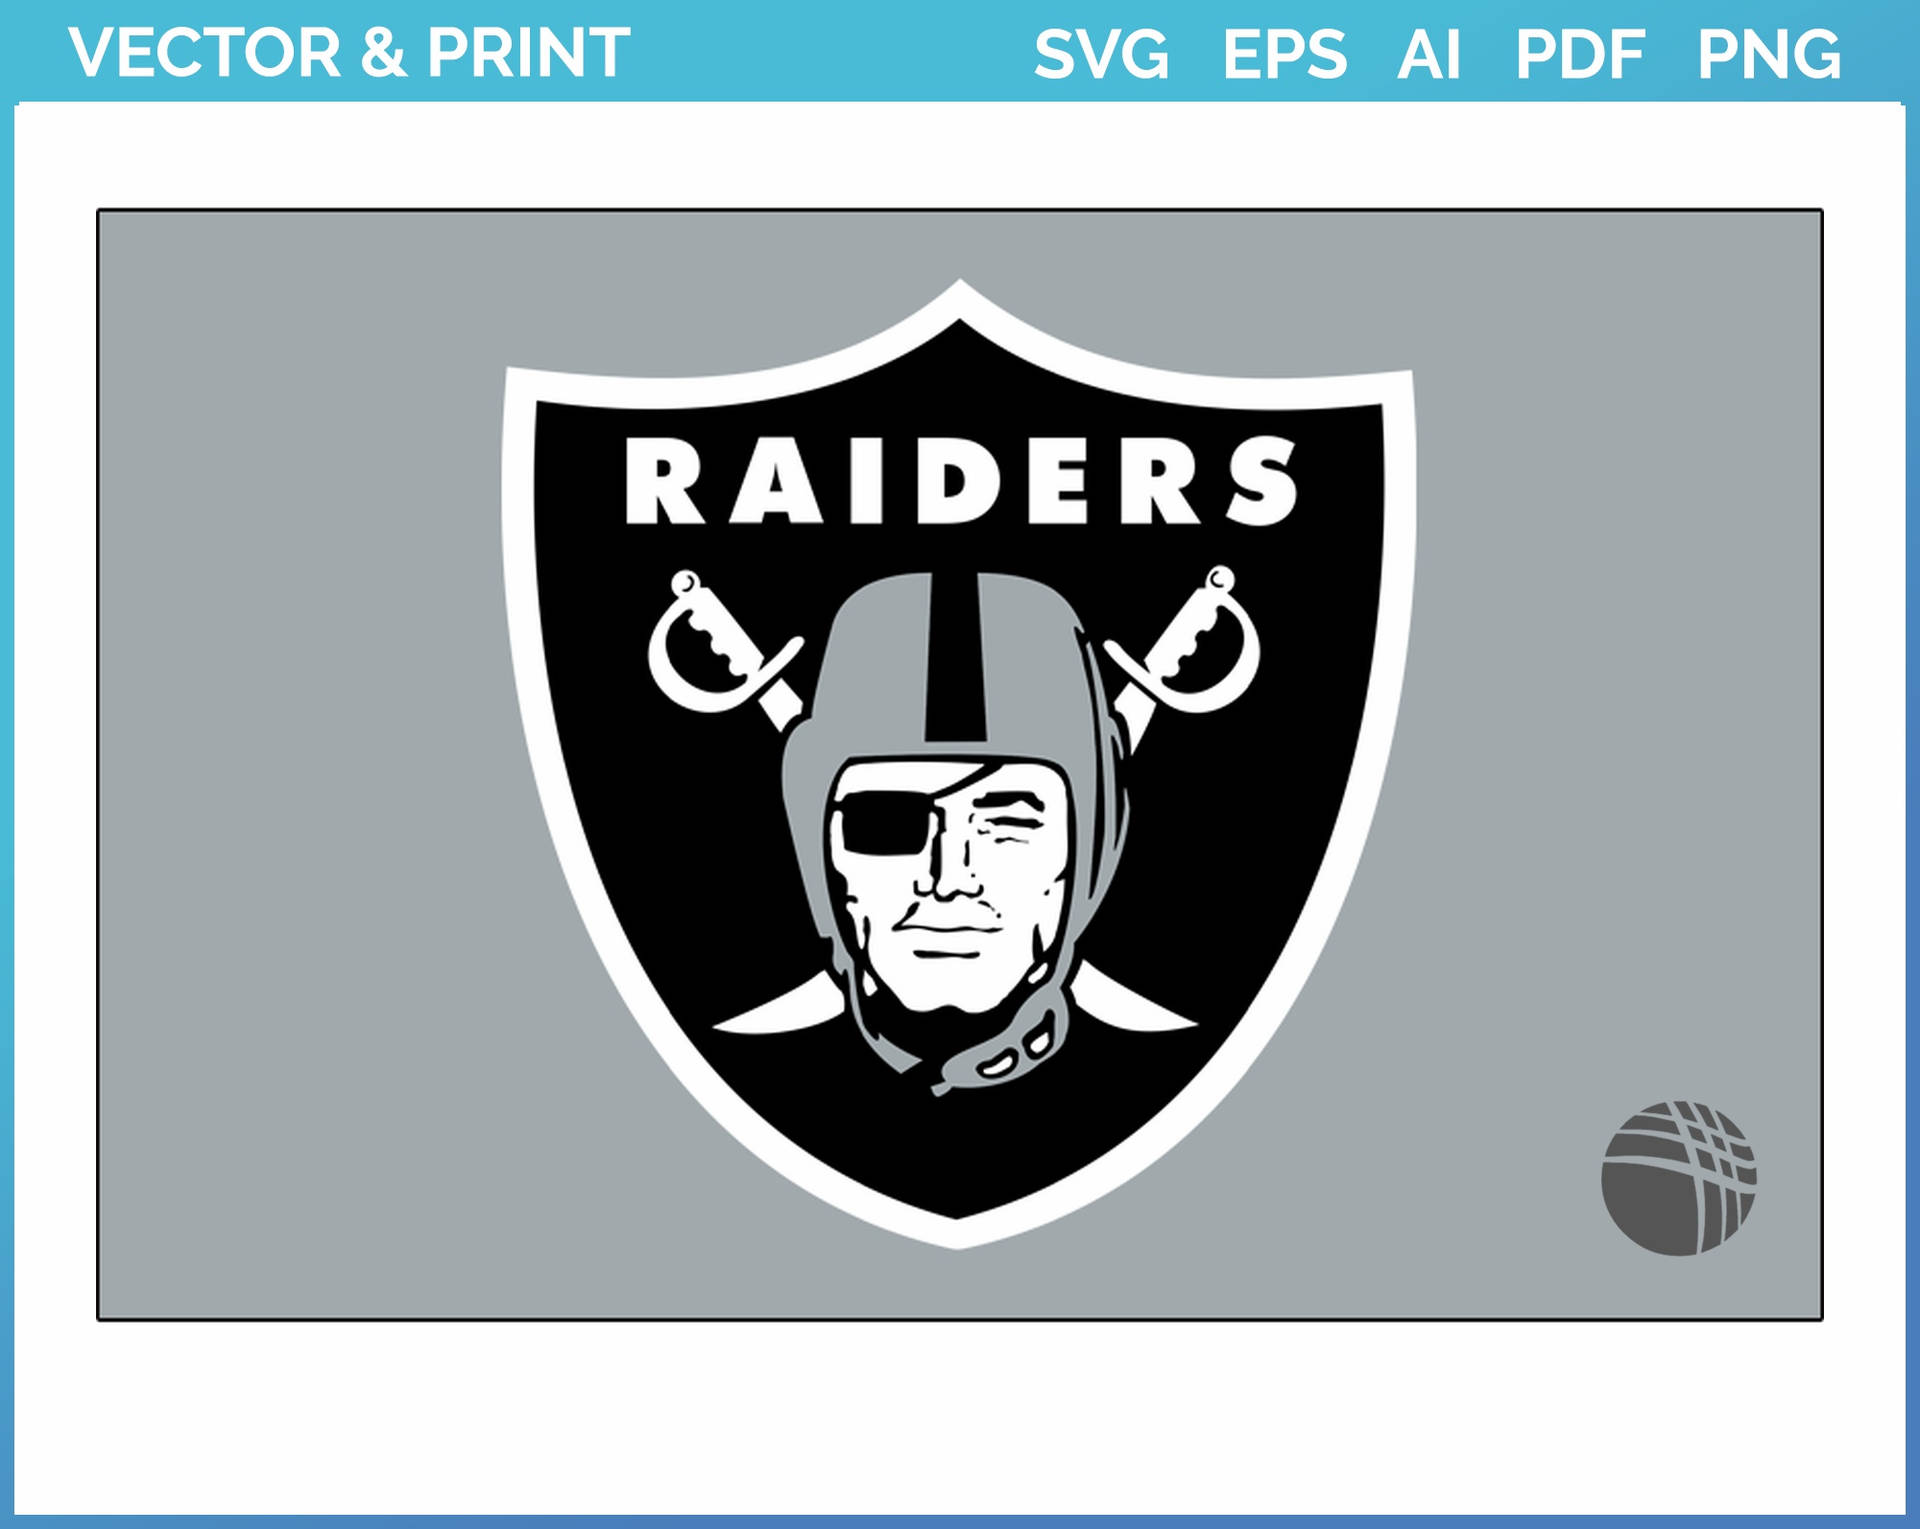 Logode Las Vegas Raiders Vectorizado E Impreso Fondo de pantalla